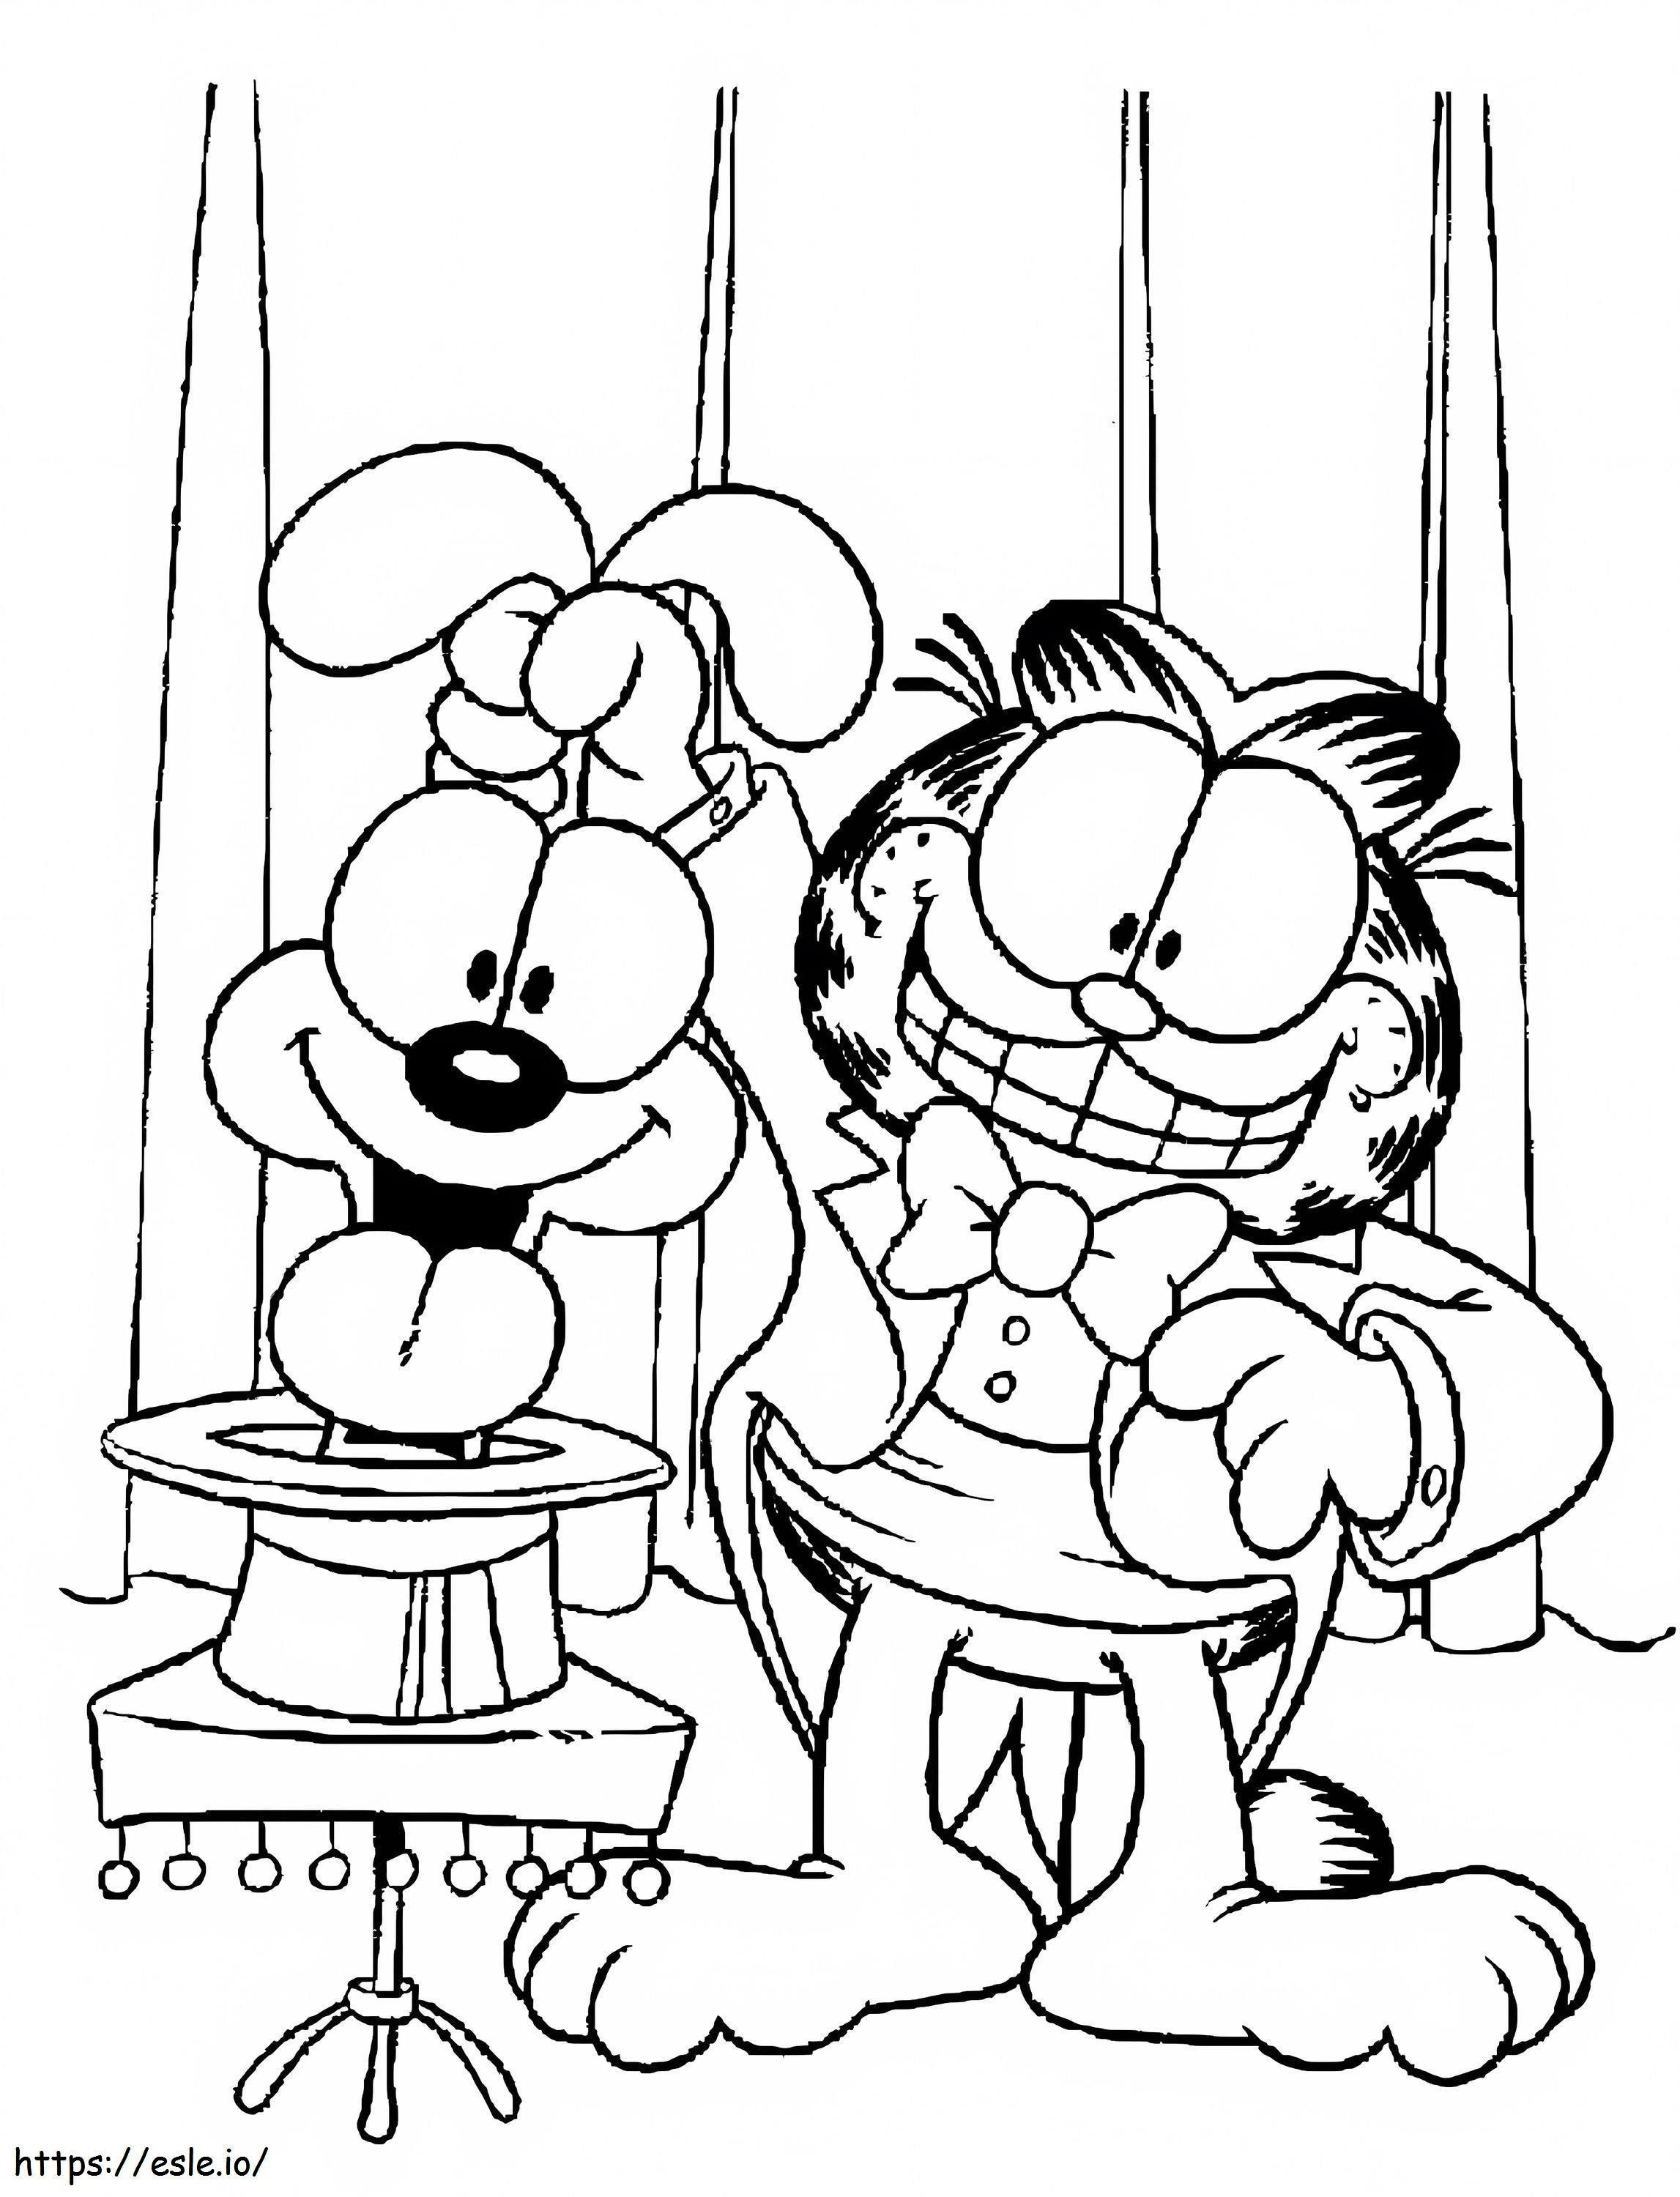 Garfield y Odie realizando un espectáculo de magia para colorear